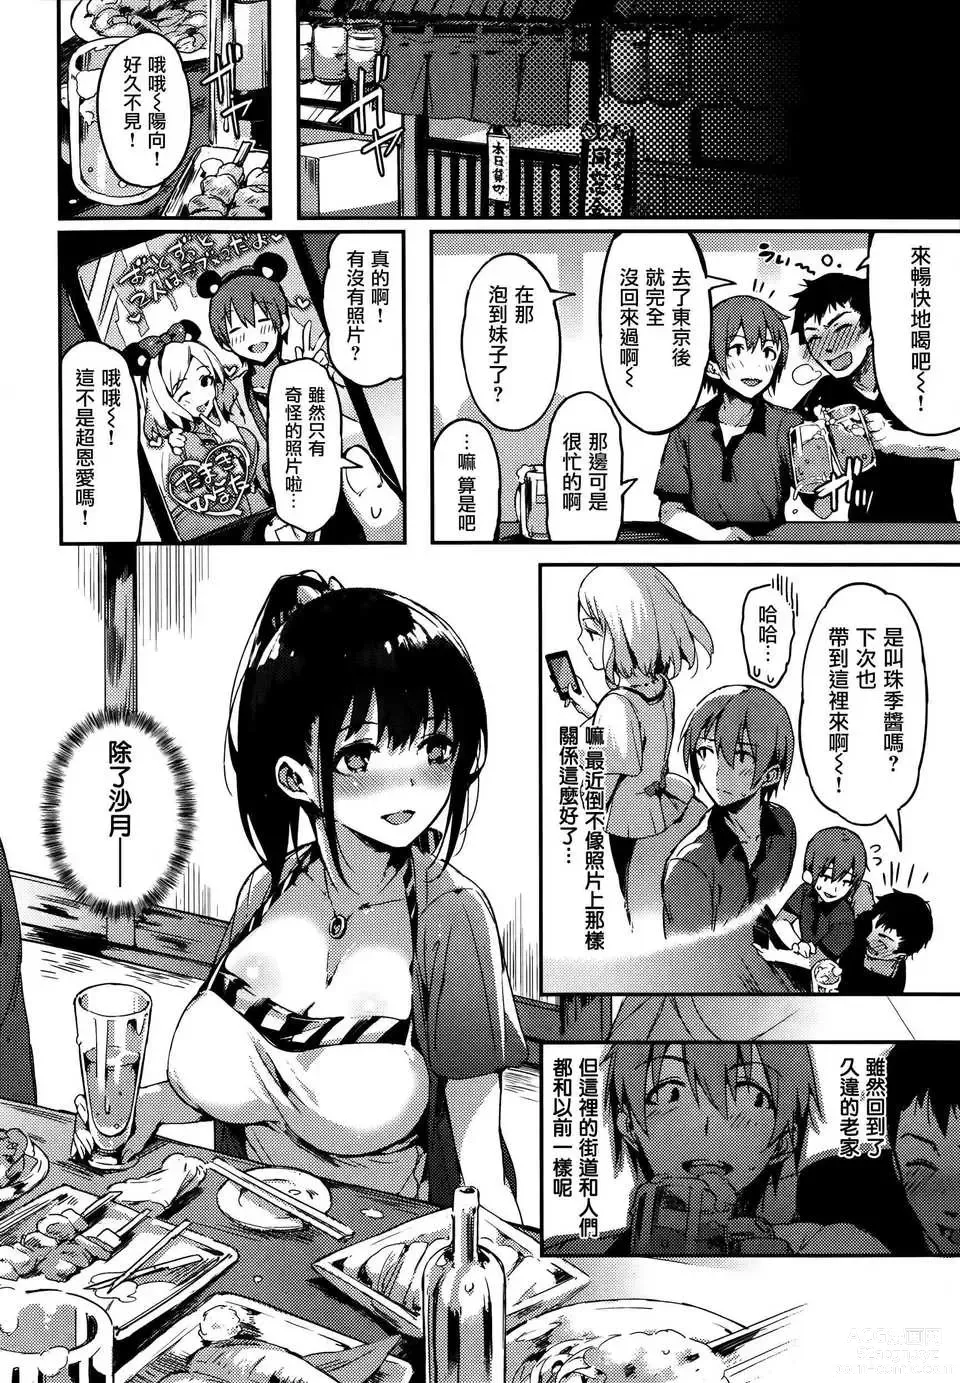 Page 2 of manga Sakumachisou